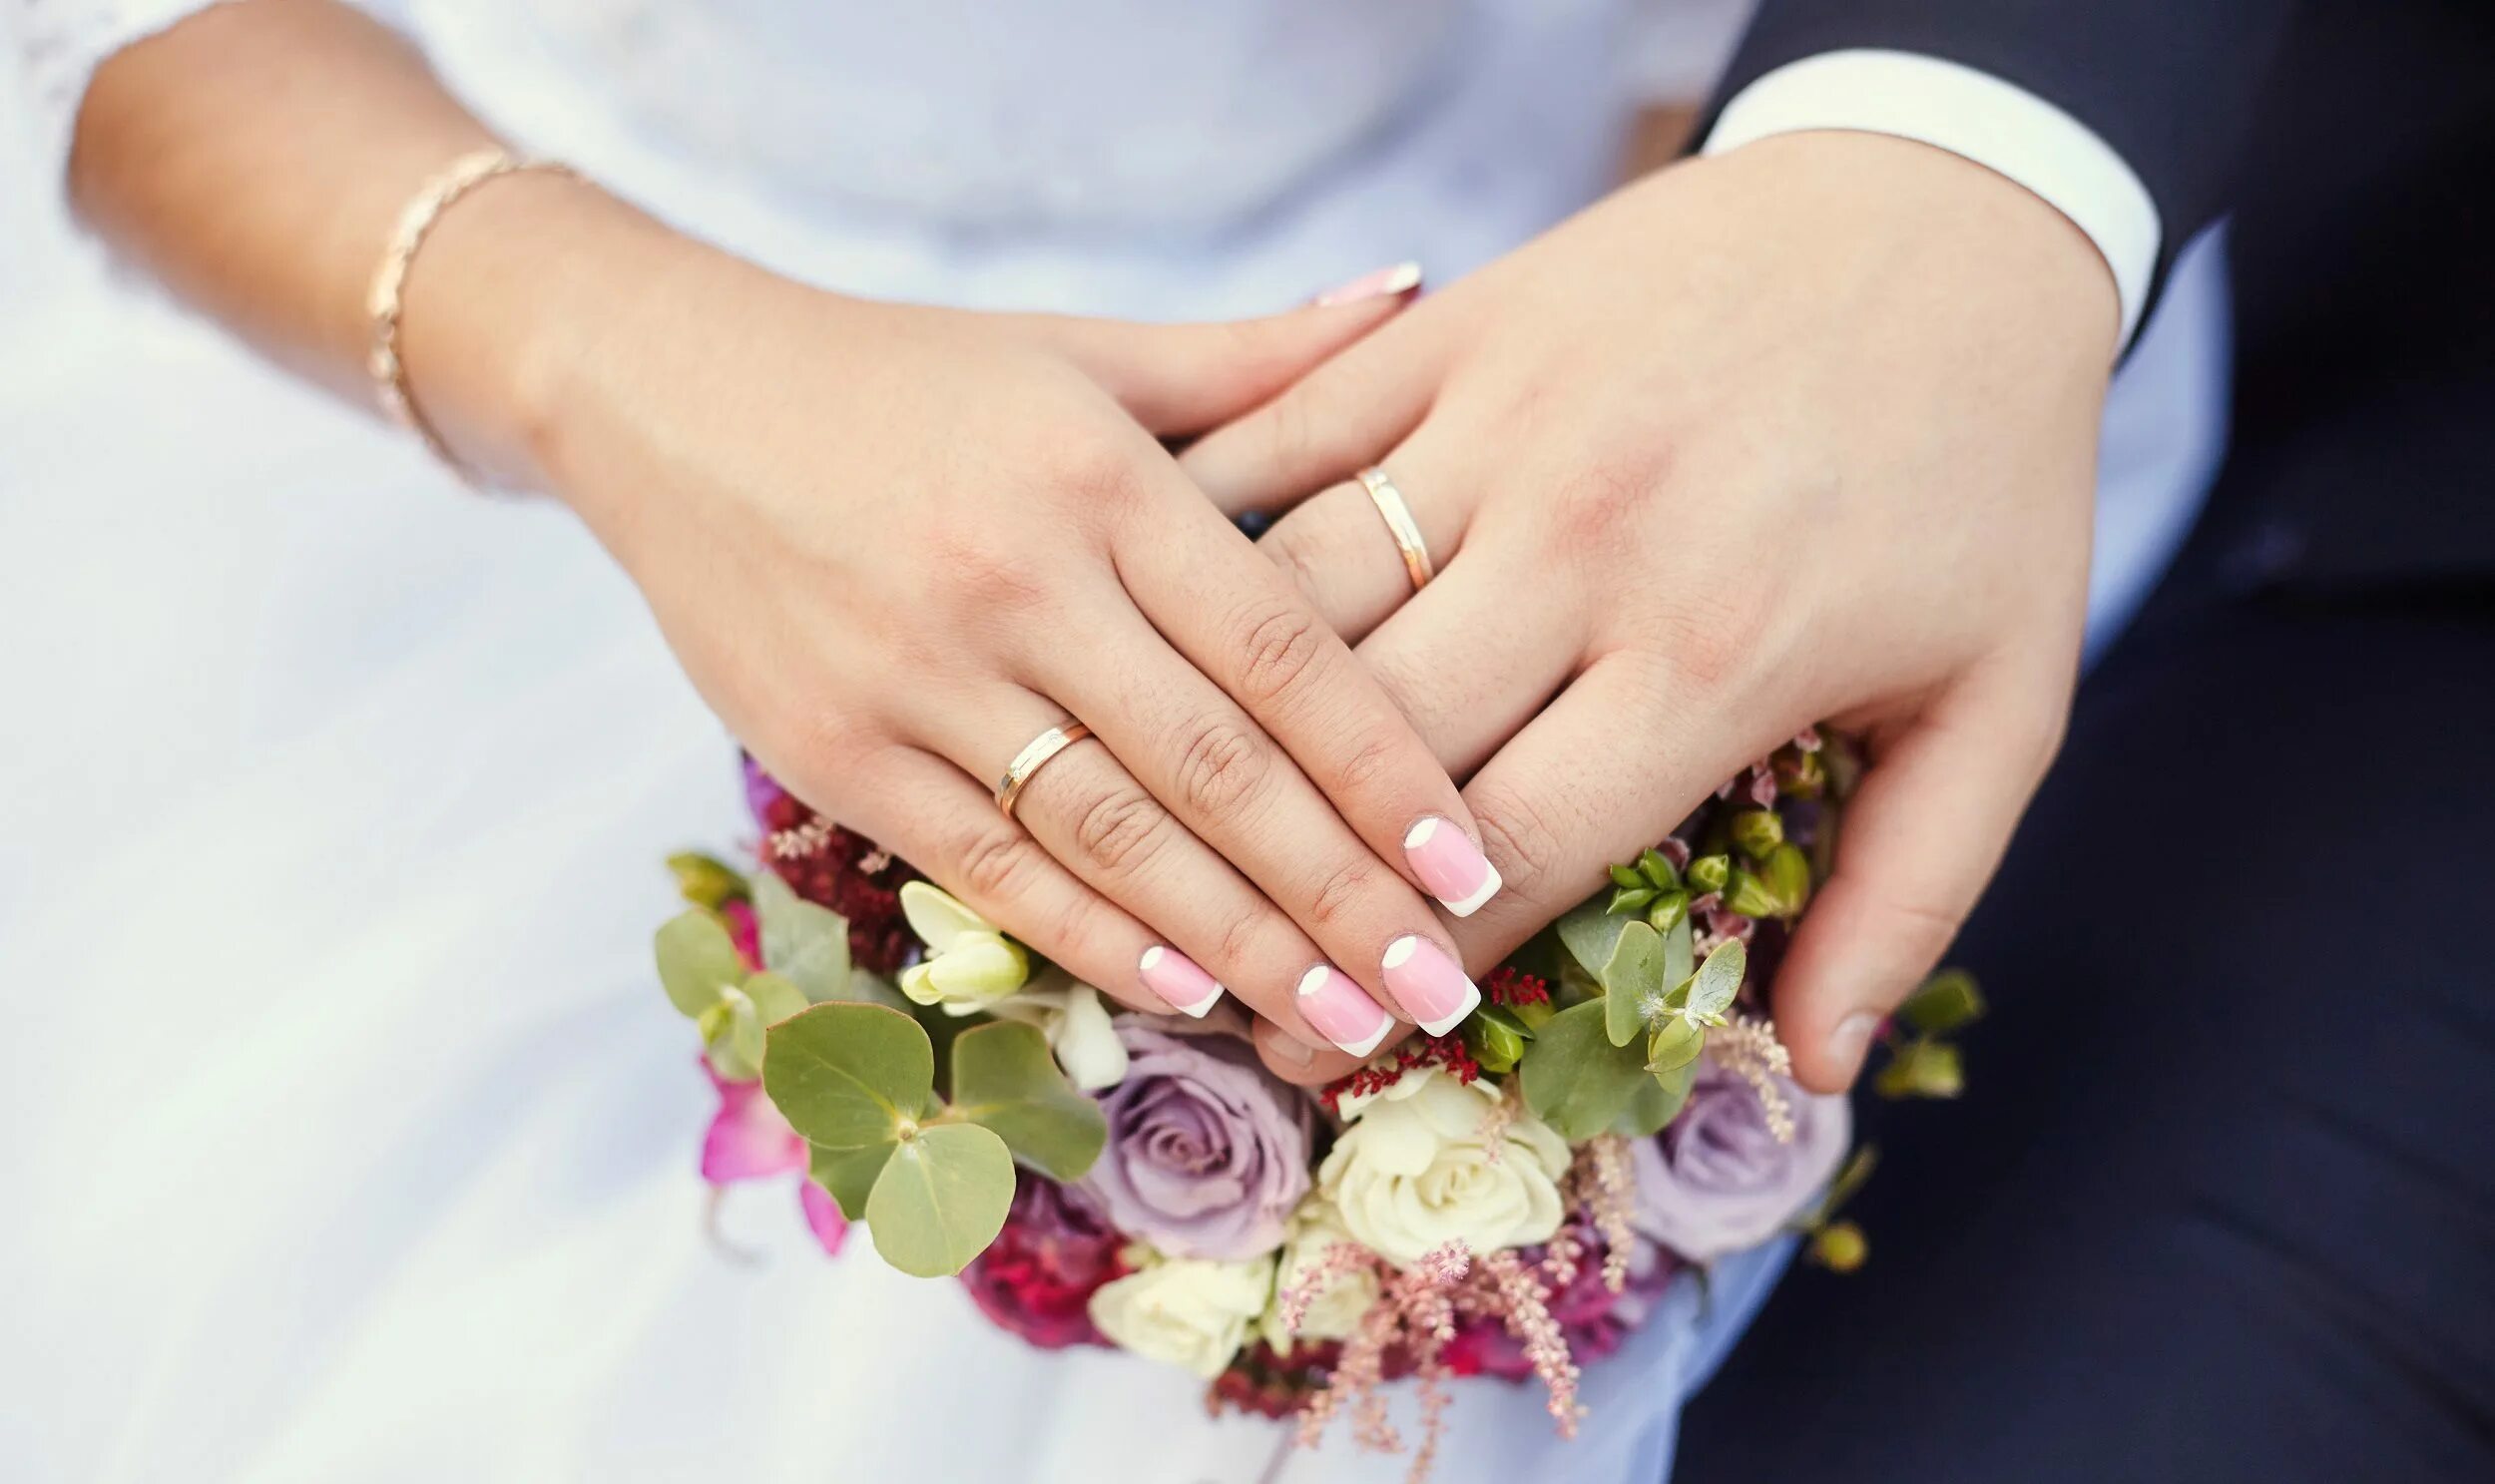 Удачное замужество. Невеста на руках у жениха. Замужество. Обручальные кольца для карты желаний.